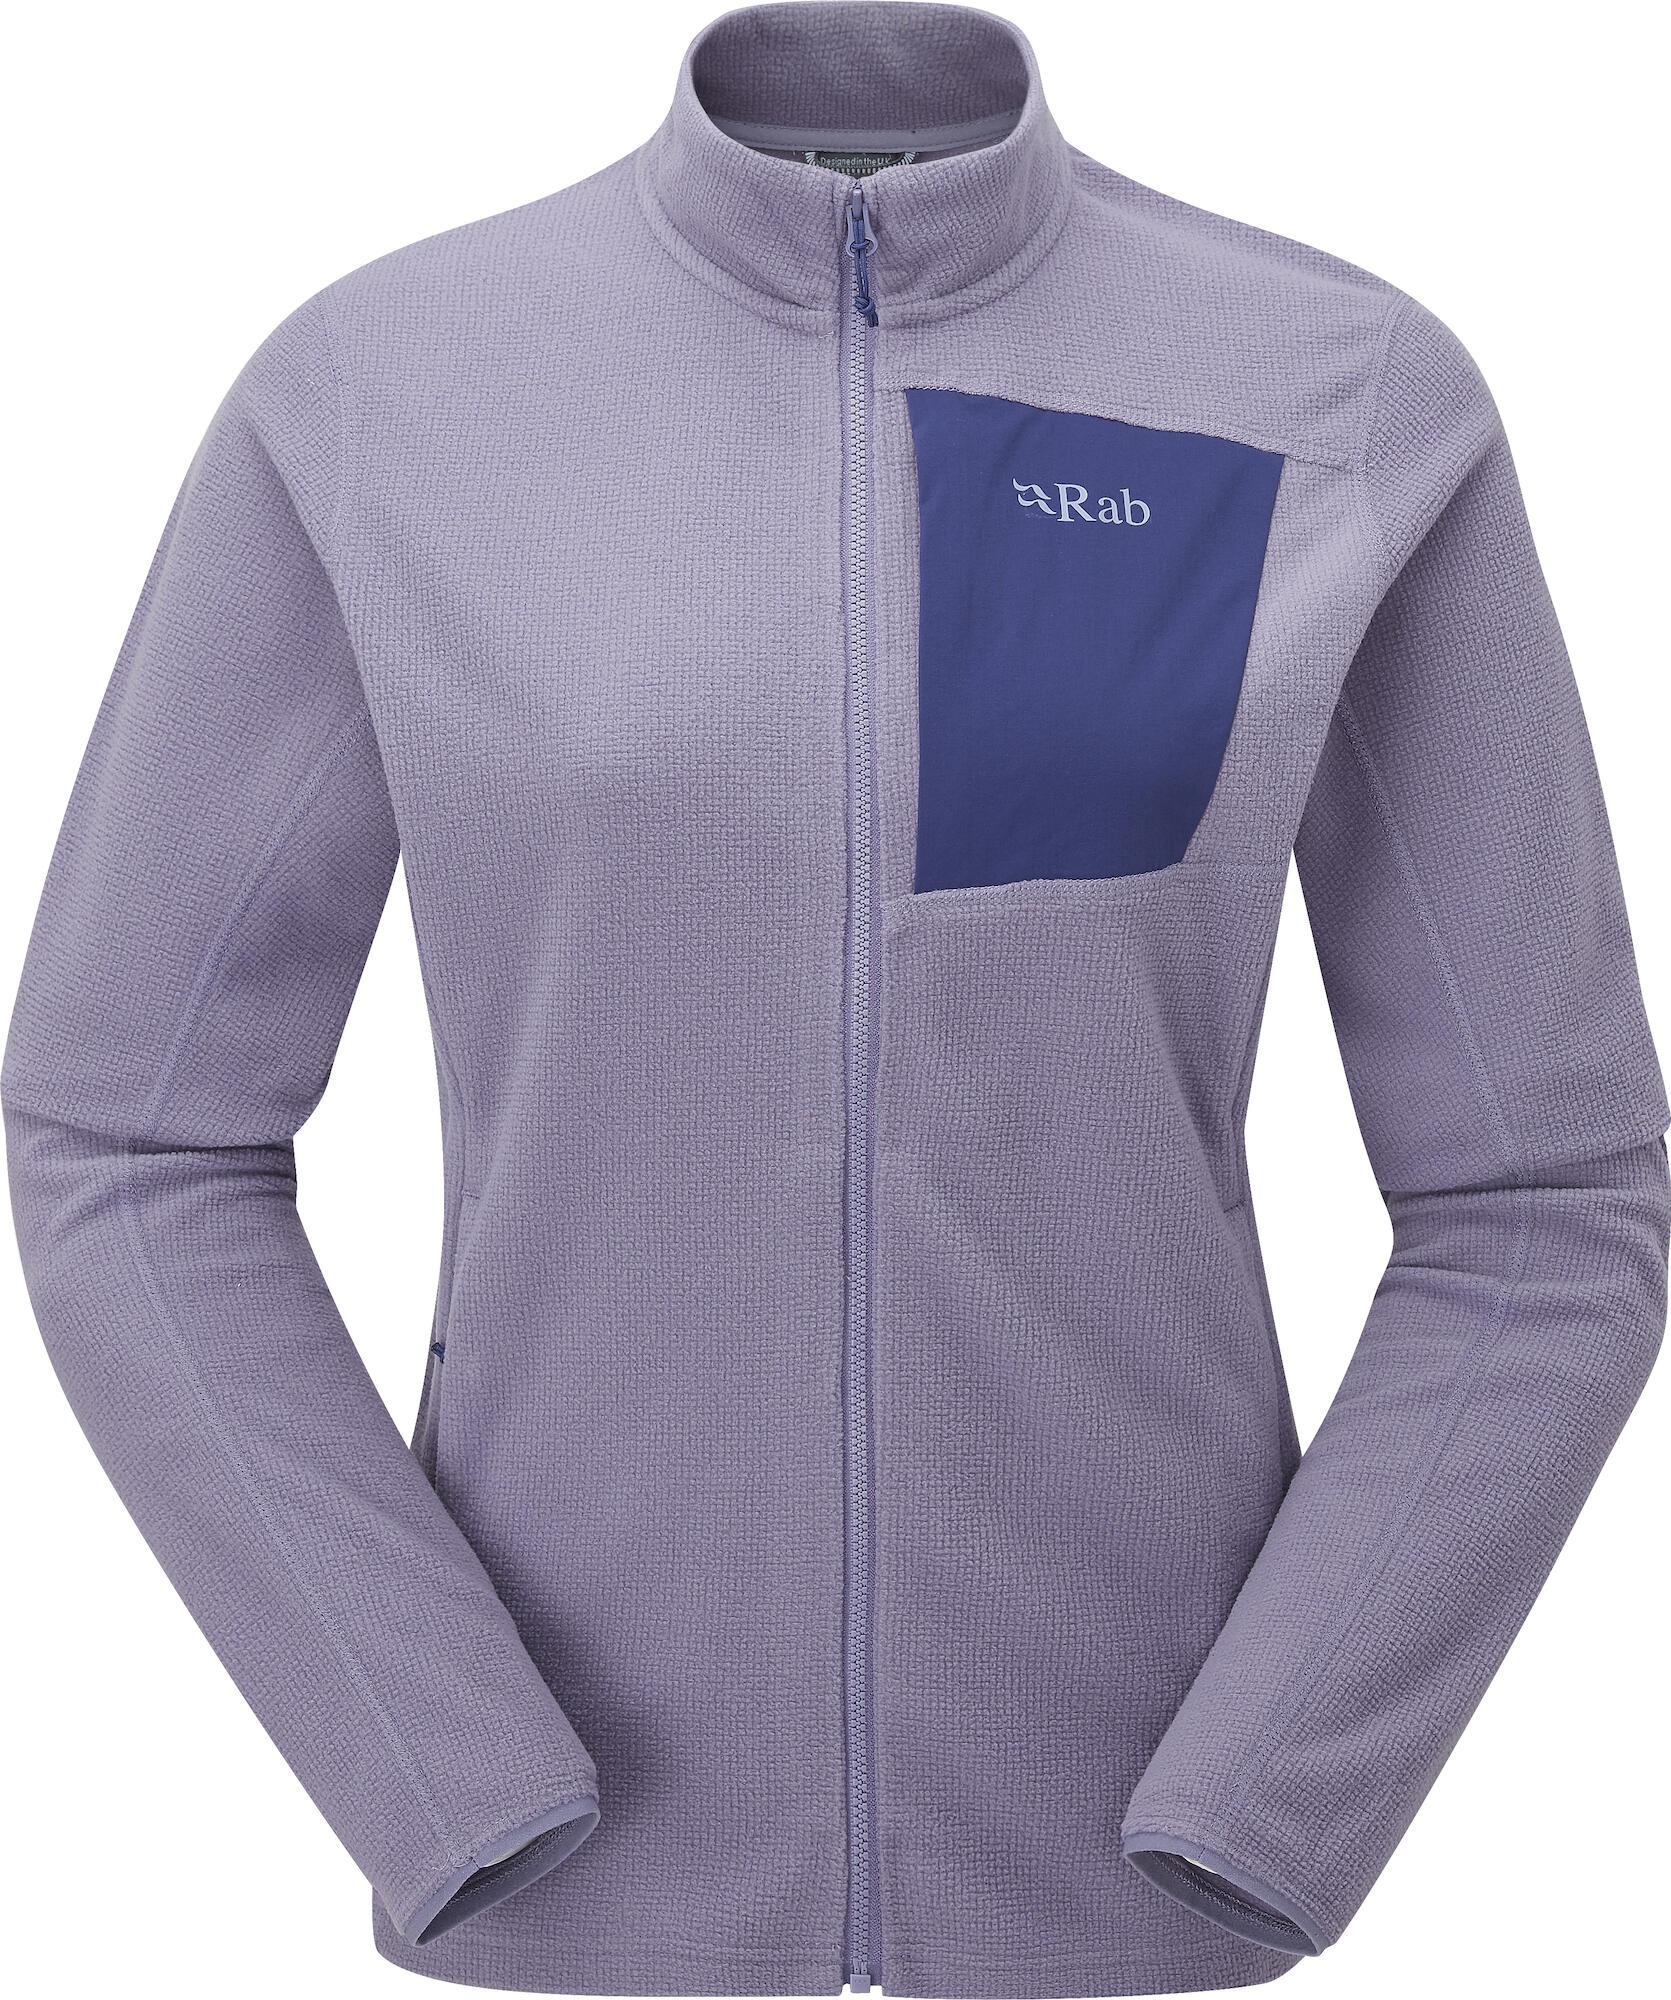 Rab Tecton Jacket Wmns purple sage (PSG) 16